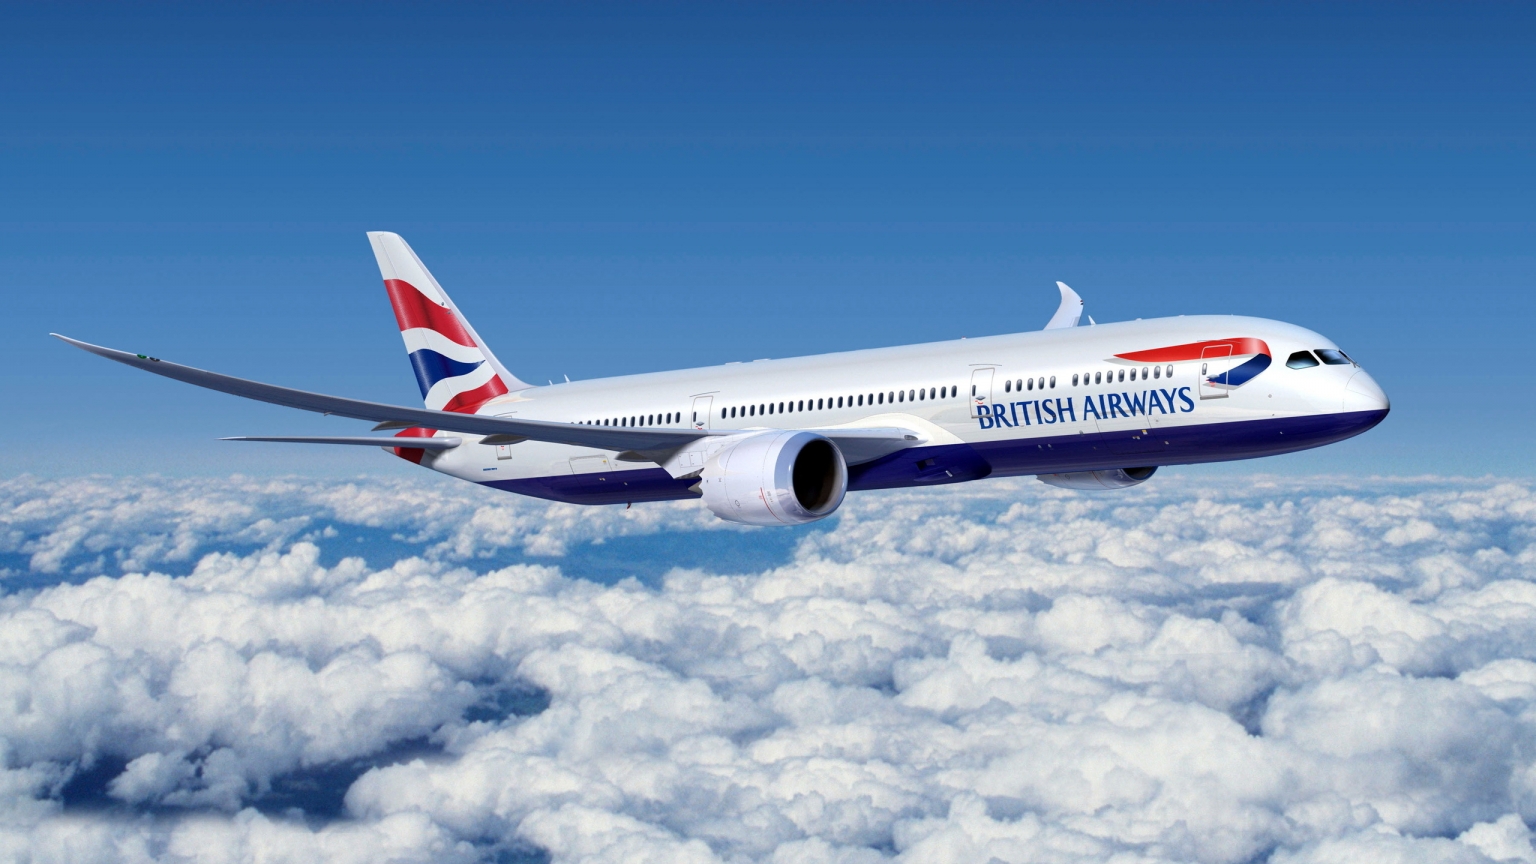 British Airways for 1536 x 864 HDTV resolution